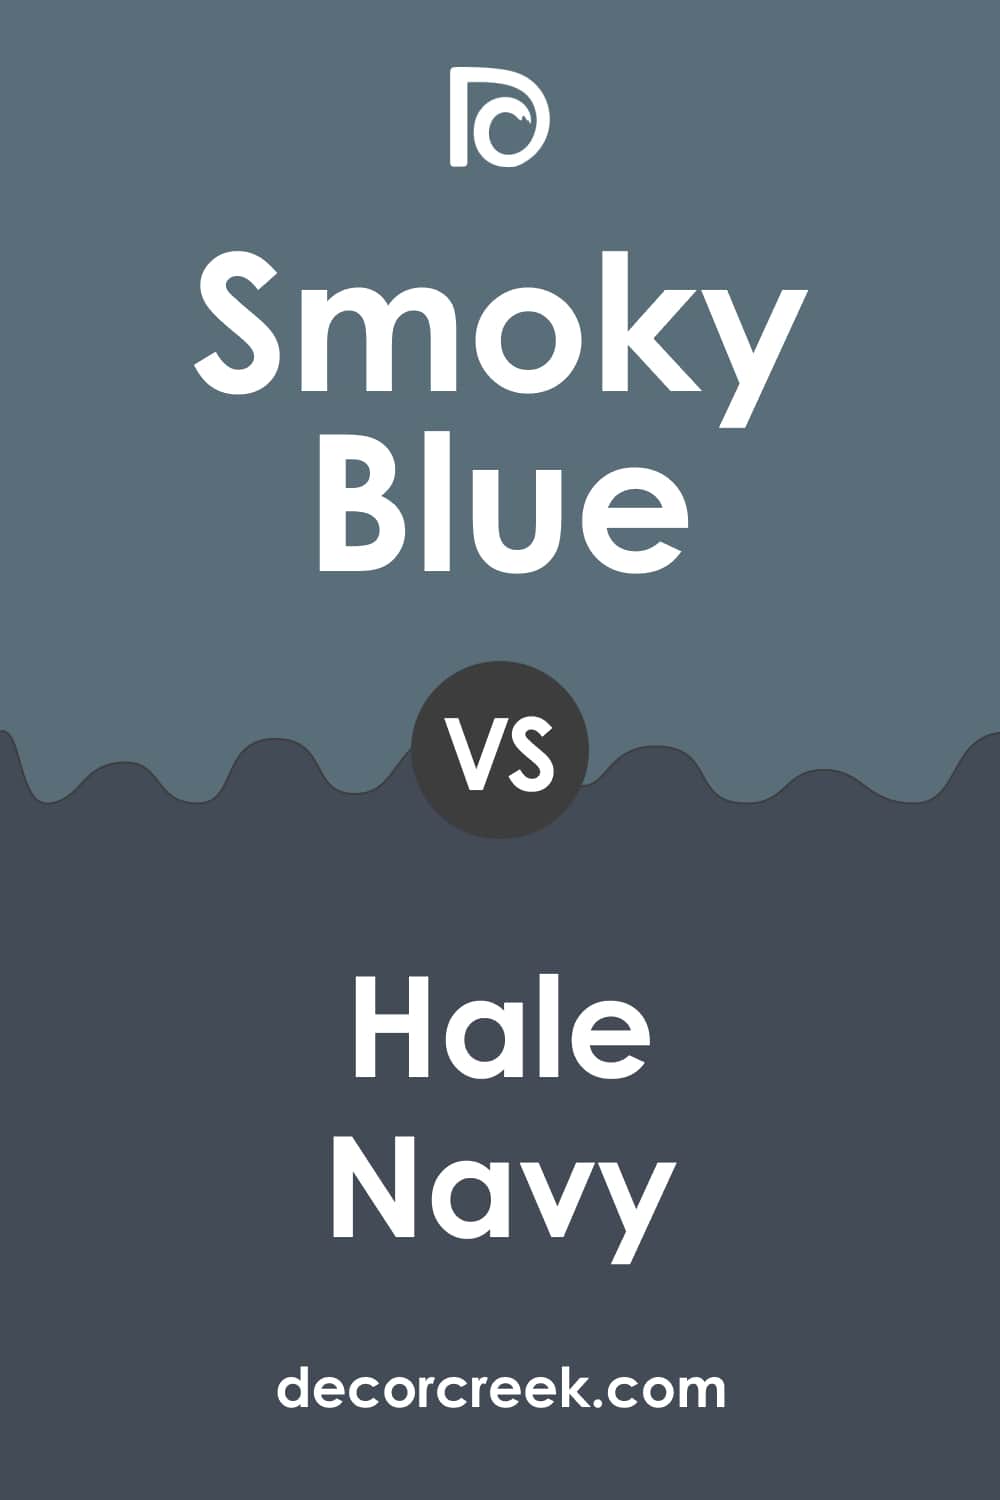 Smoky Blue vs. Hale Navy